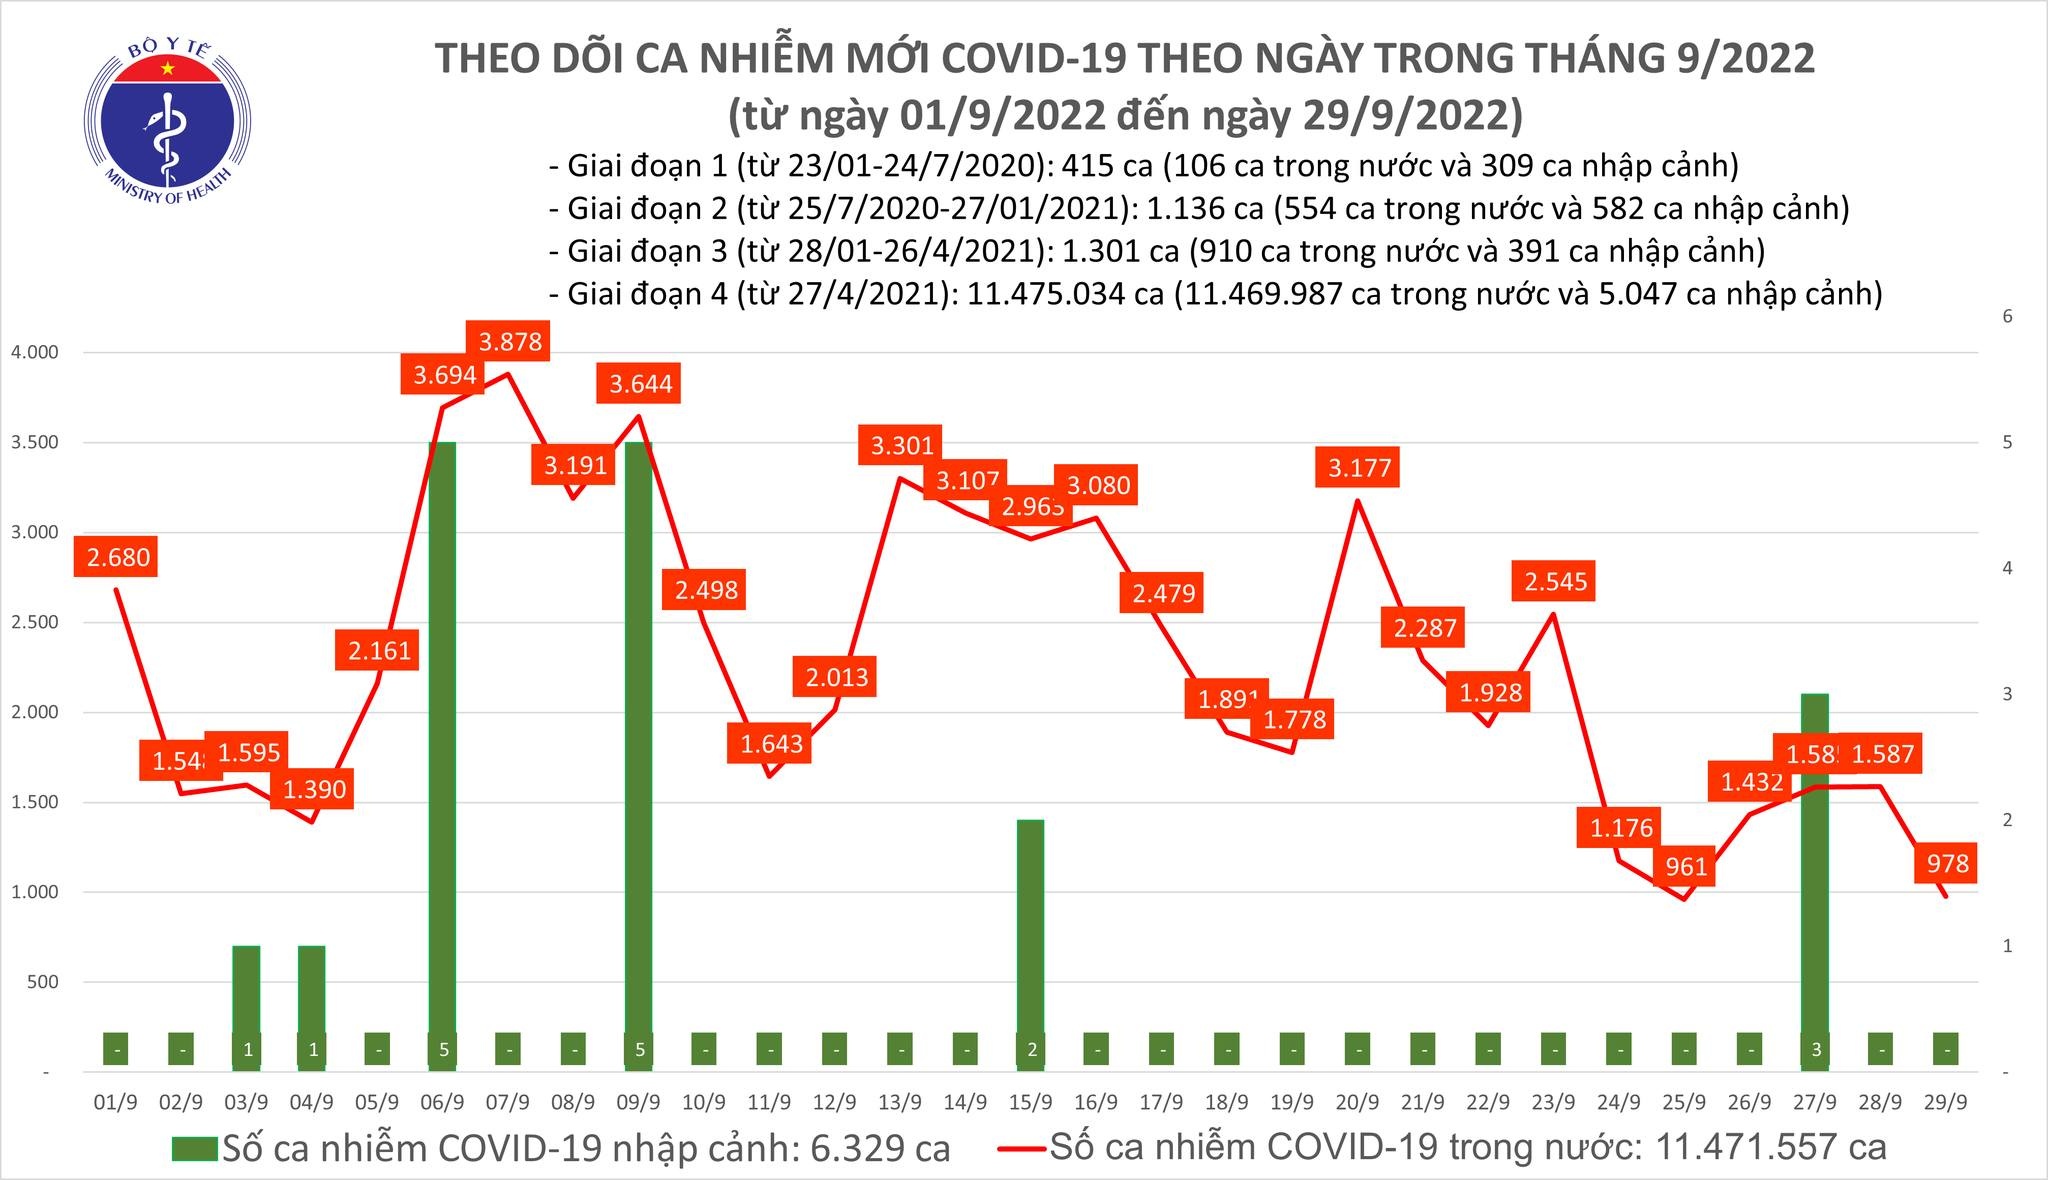 Việt Nam ghi nhận 978 ca mắc mới COVID-19 trong ngày 29/9